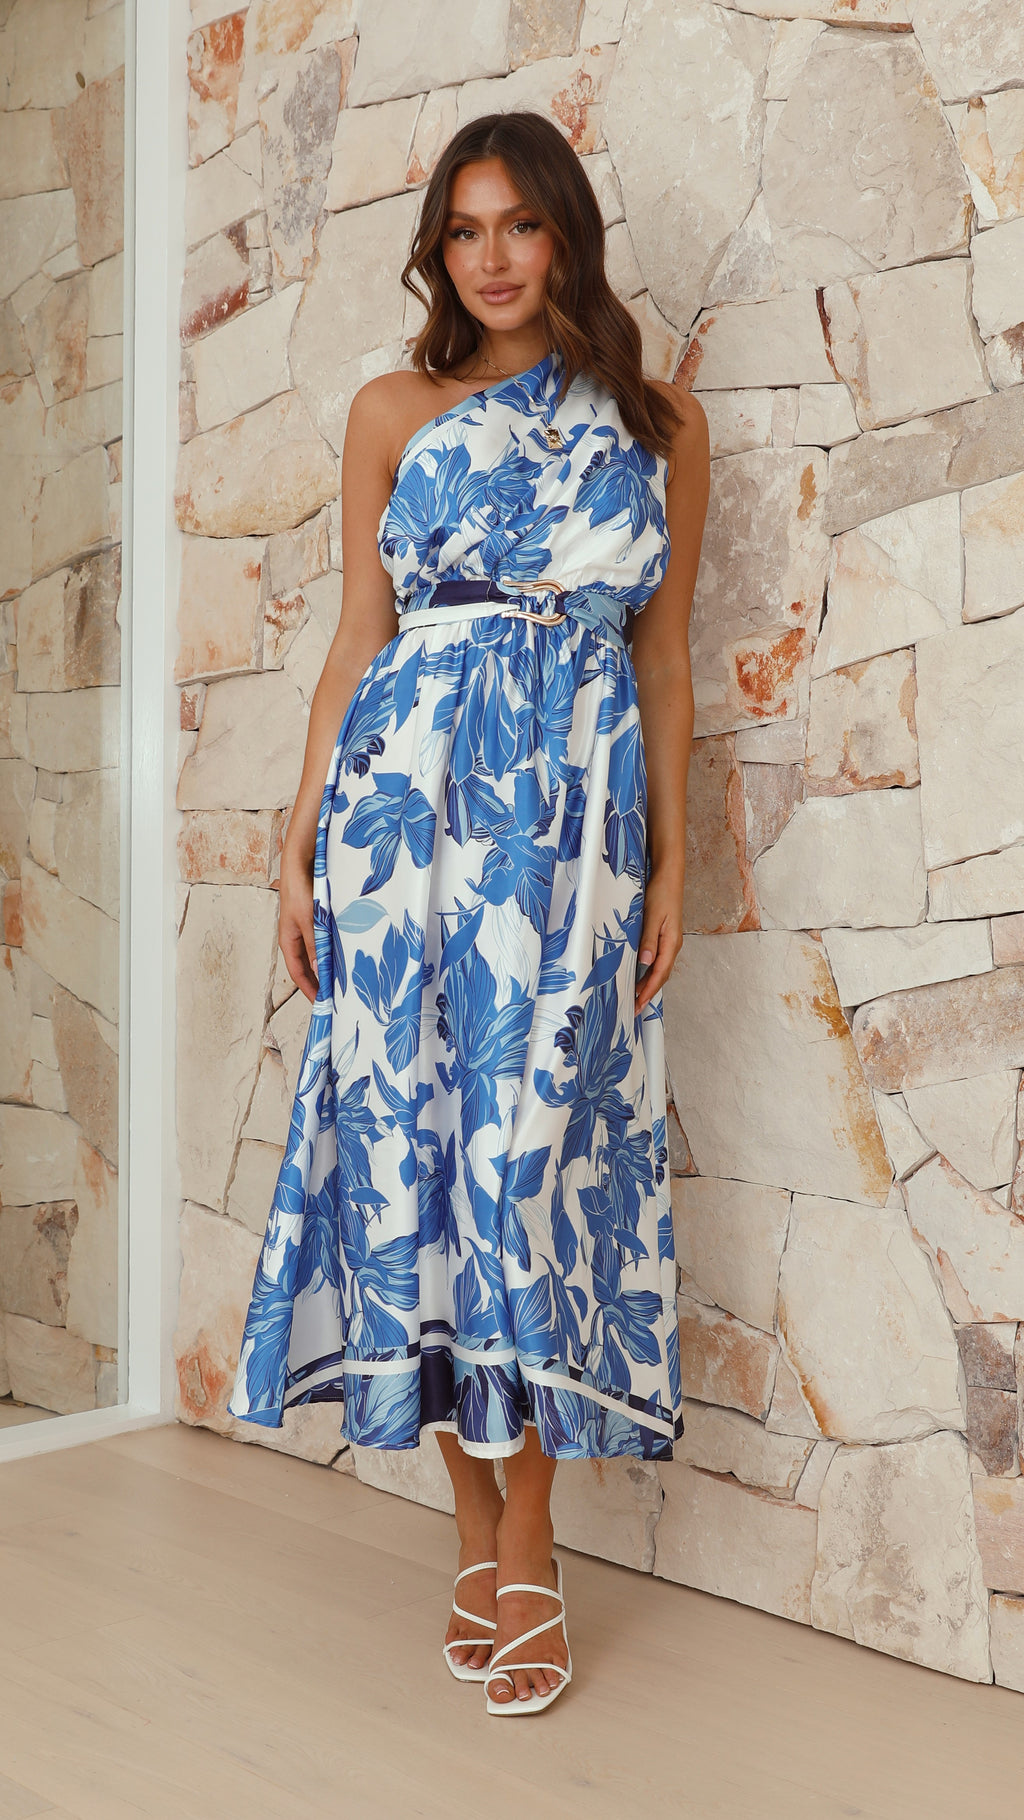 Hadas Maxi Dress - Blue / White Floral